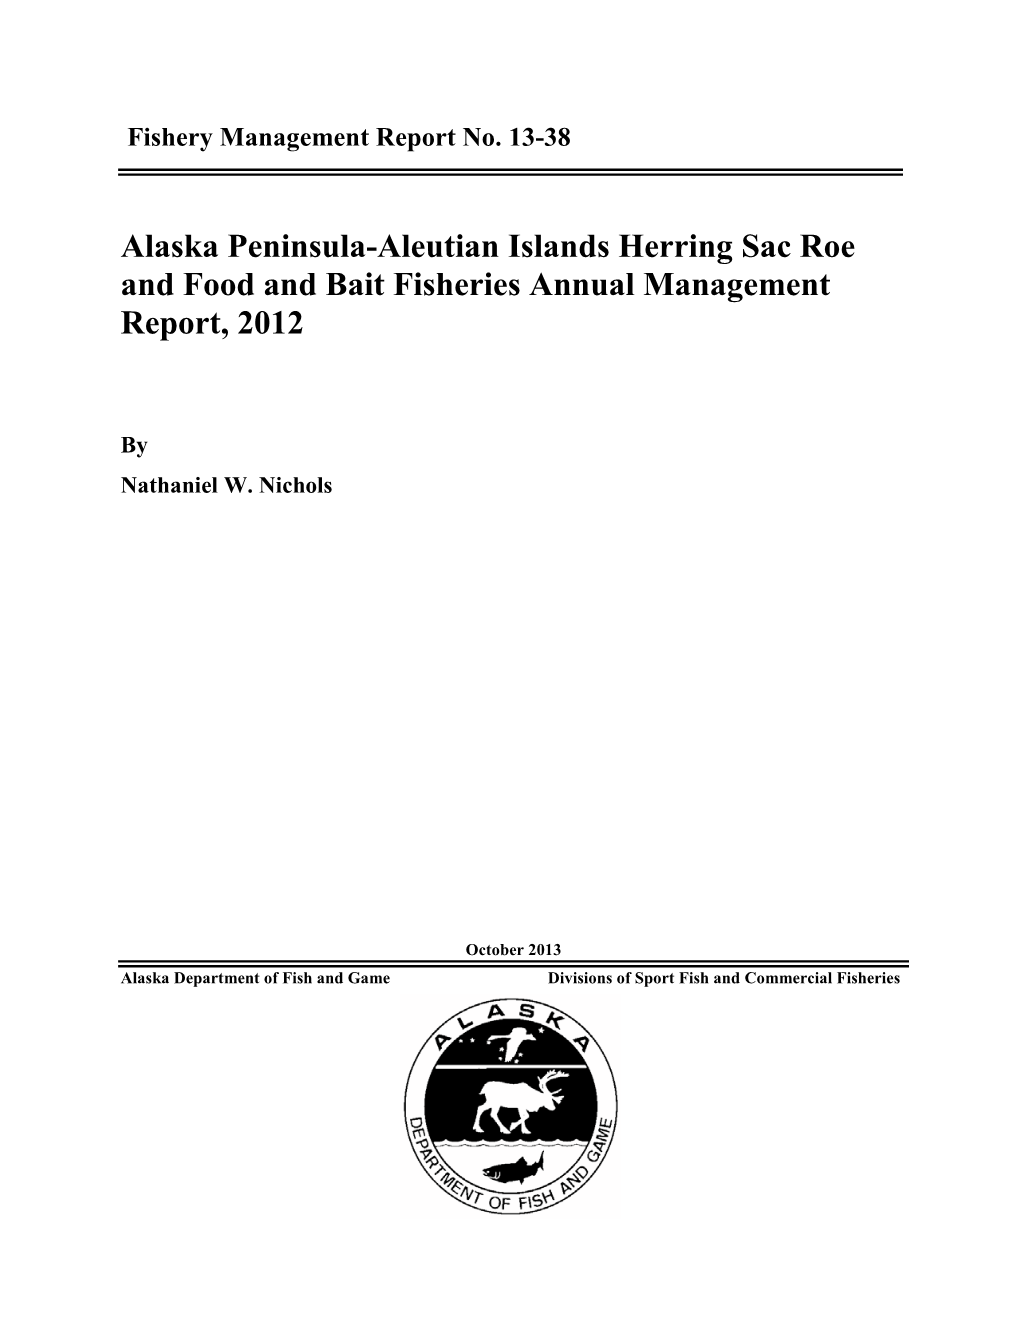 Alaska Peninsula-Aleutian Islands Herring Sac Roe and Food and Bait Fisheries Annual Management Report, 2012